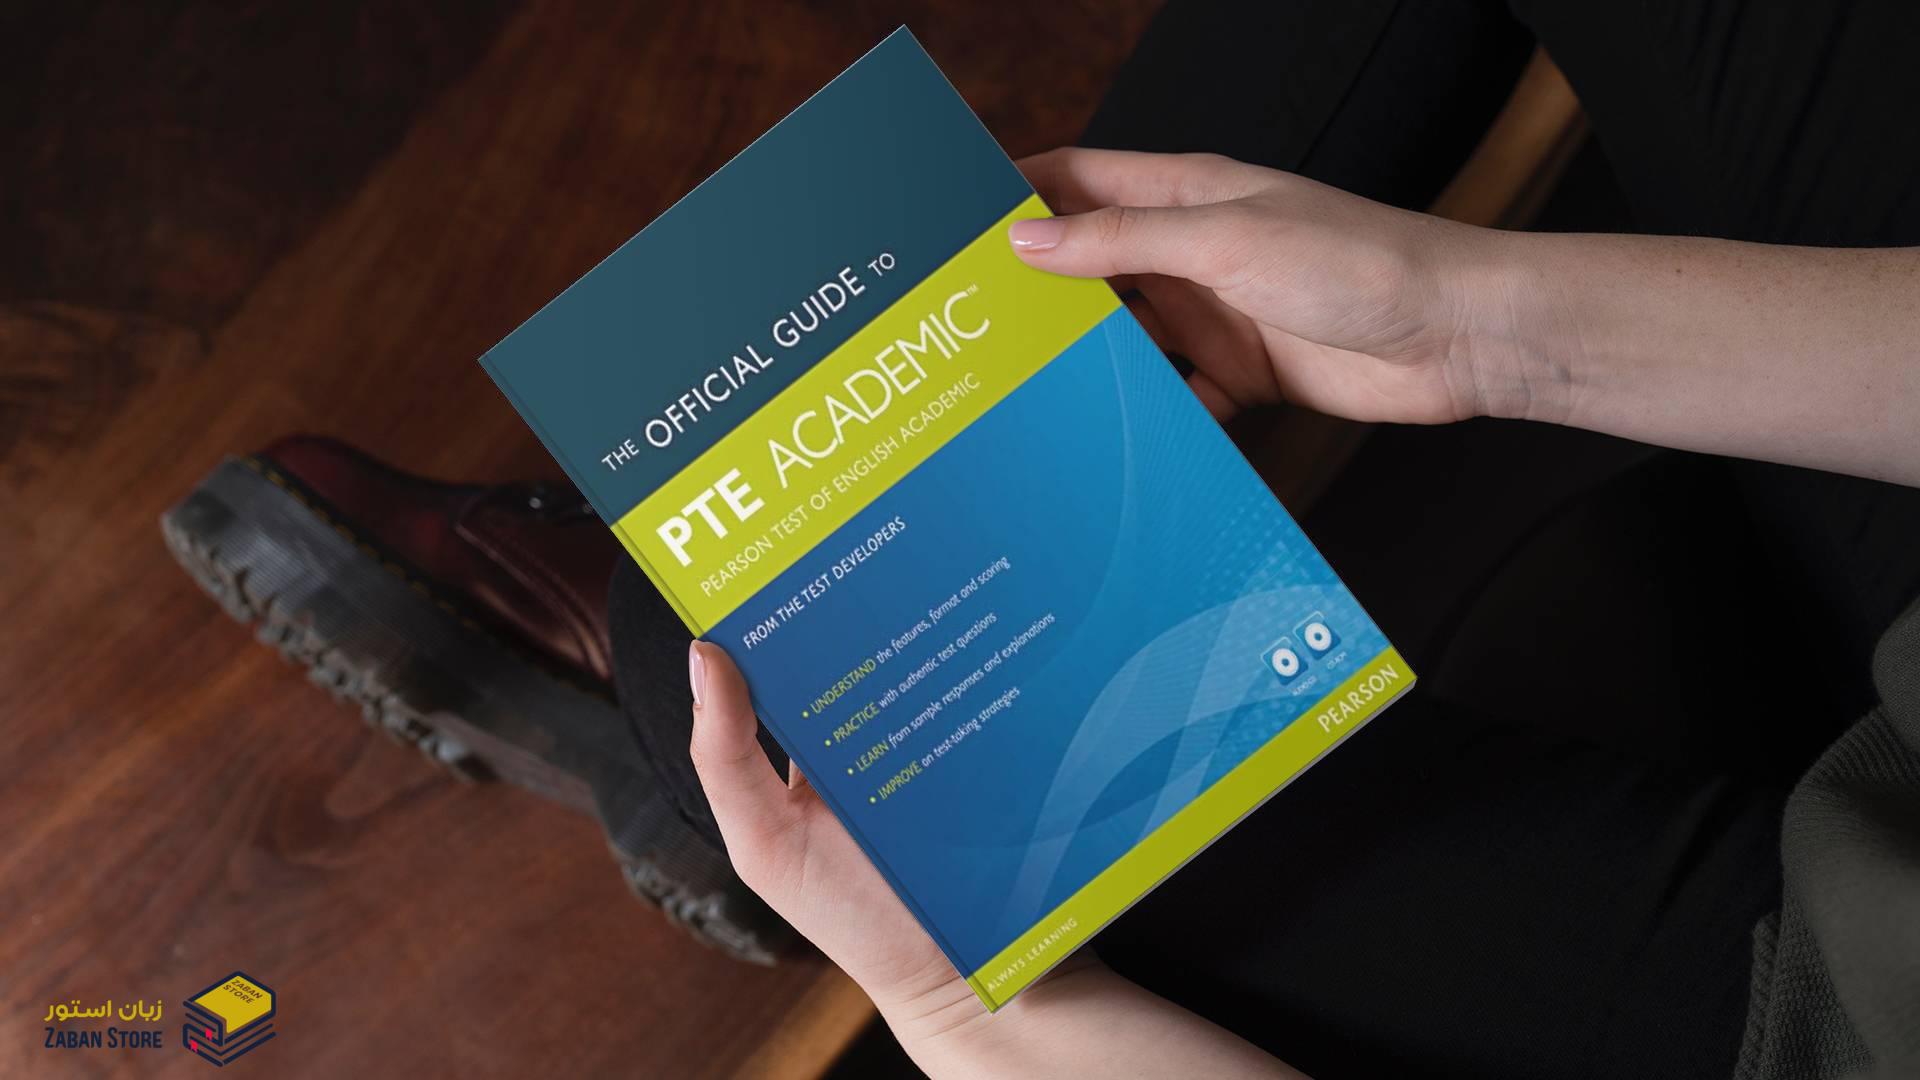 خرید کتاب آزمون زبان جی ار ای | The Official Guide to PTE Academic Pearson Test of English PTE Academic | آفیشال گاید تو پی تی ای آکادمیک